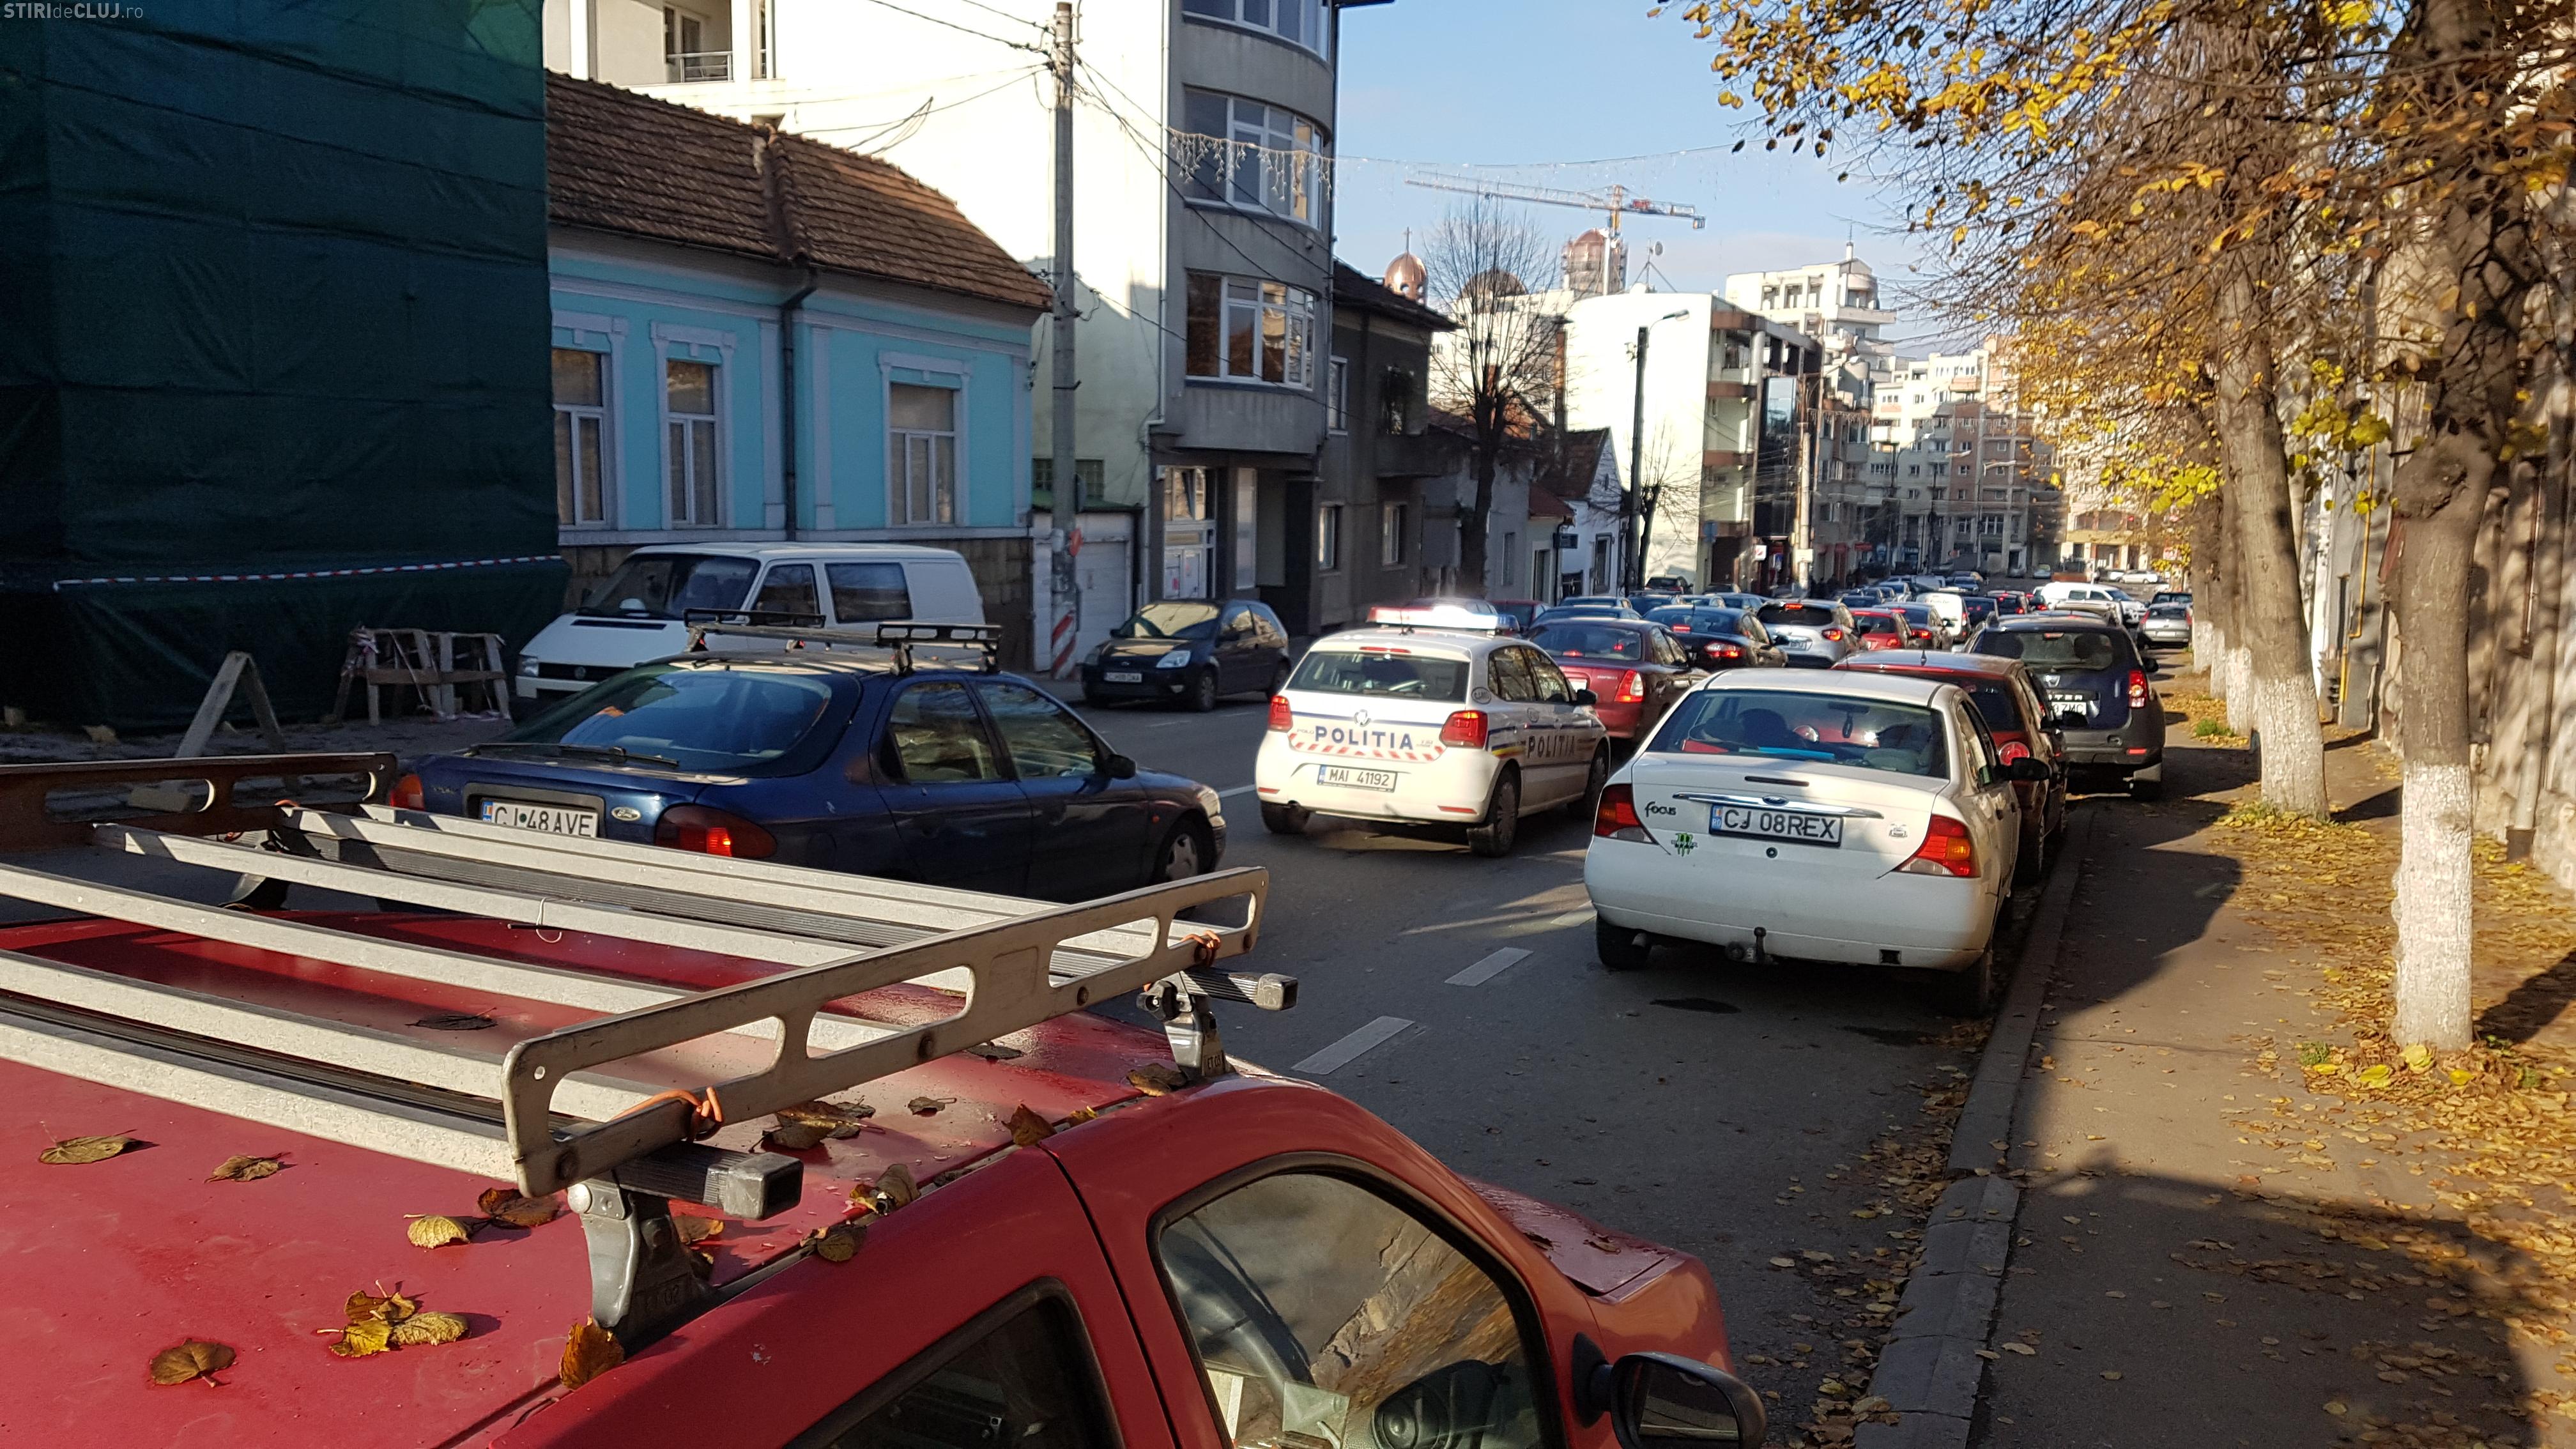 Pe strada Constantin Brâncuși nu se mai emit autorizații pentru noi blocuri, dar nu se spune câte s-au emis deja și ”dospesc”